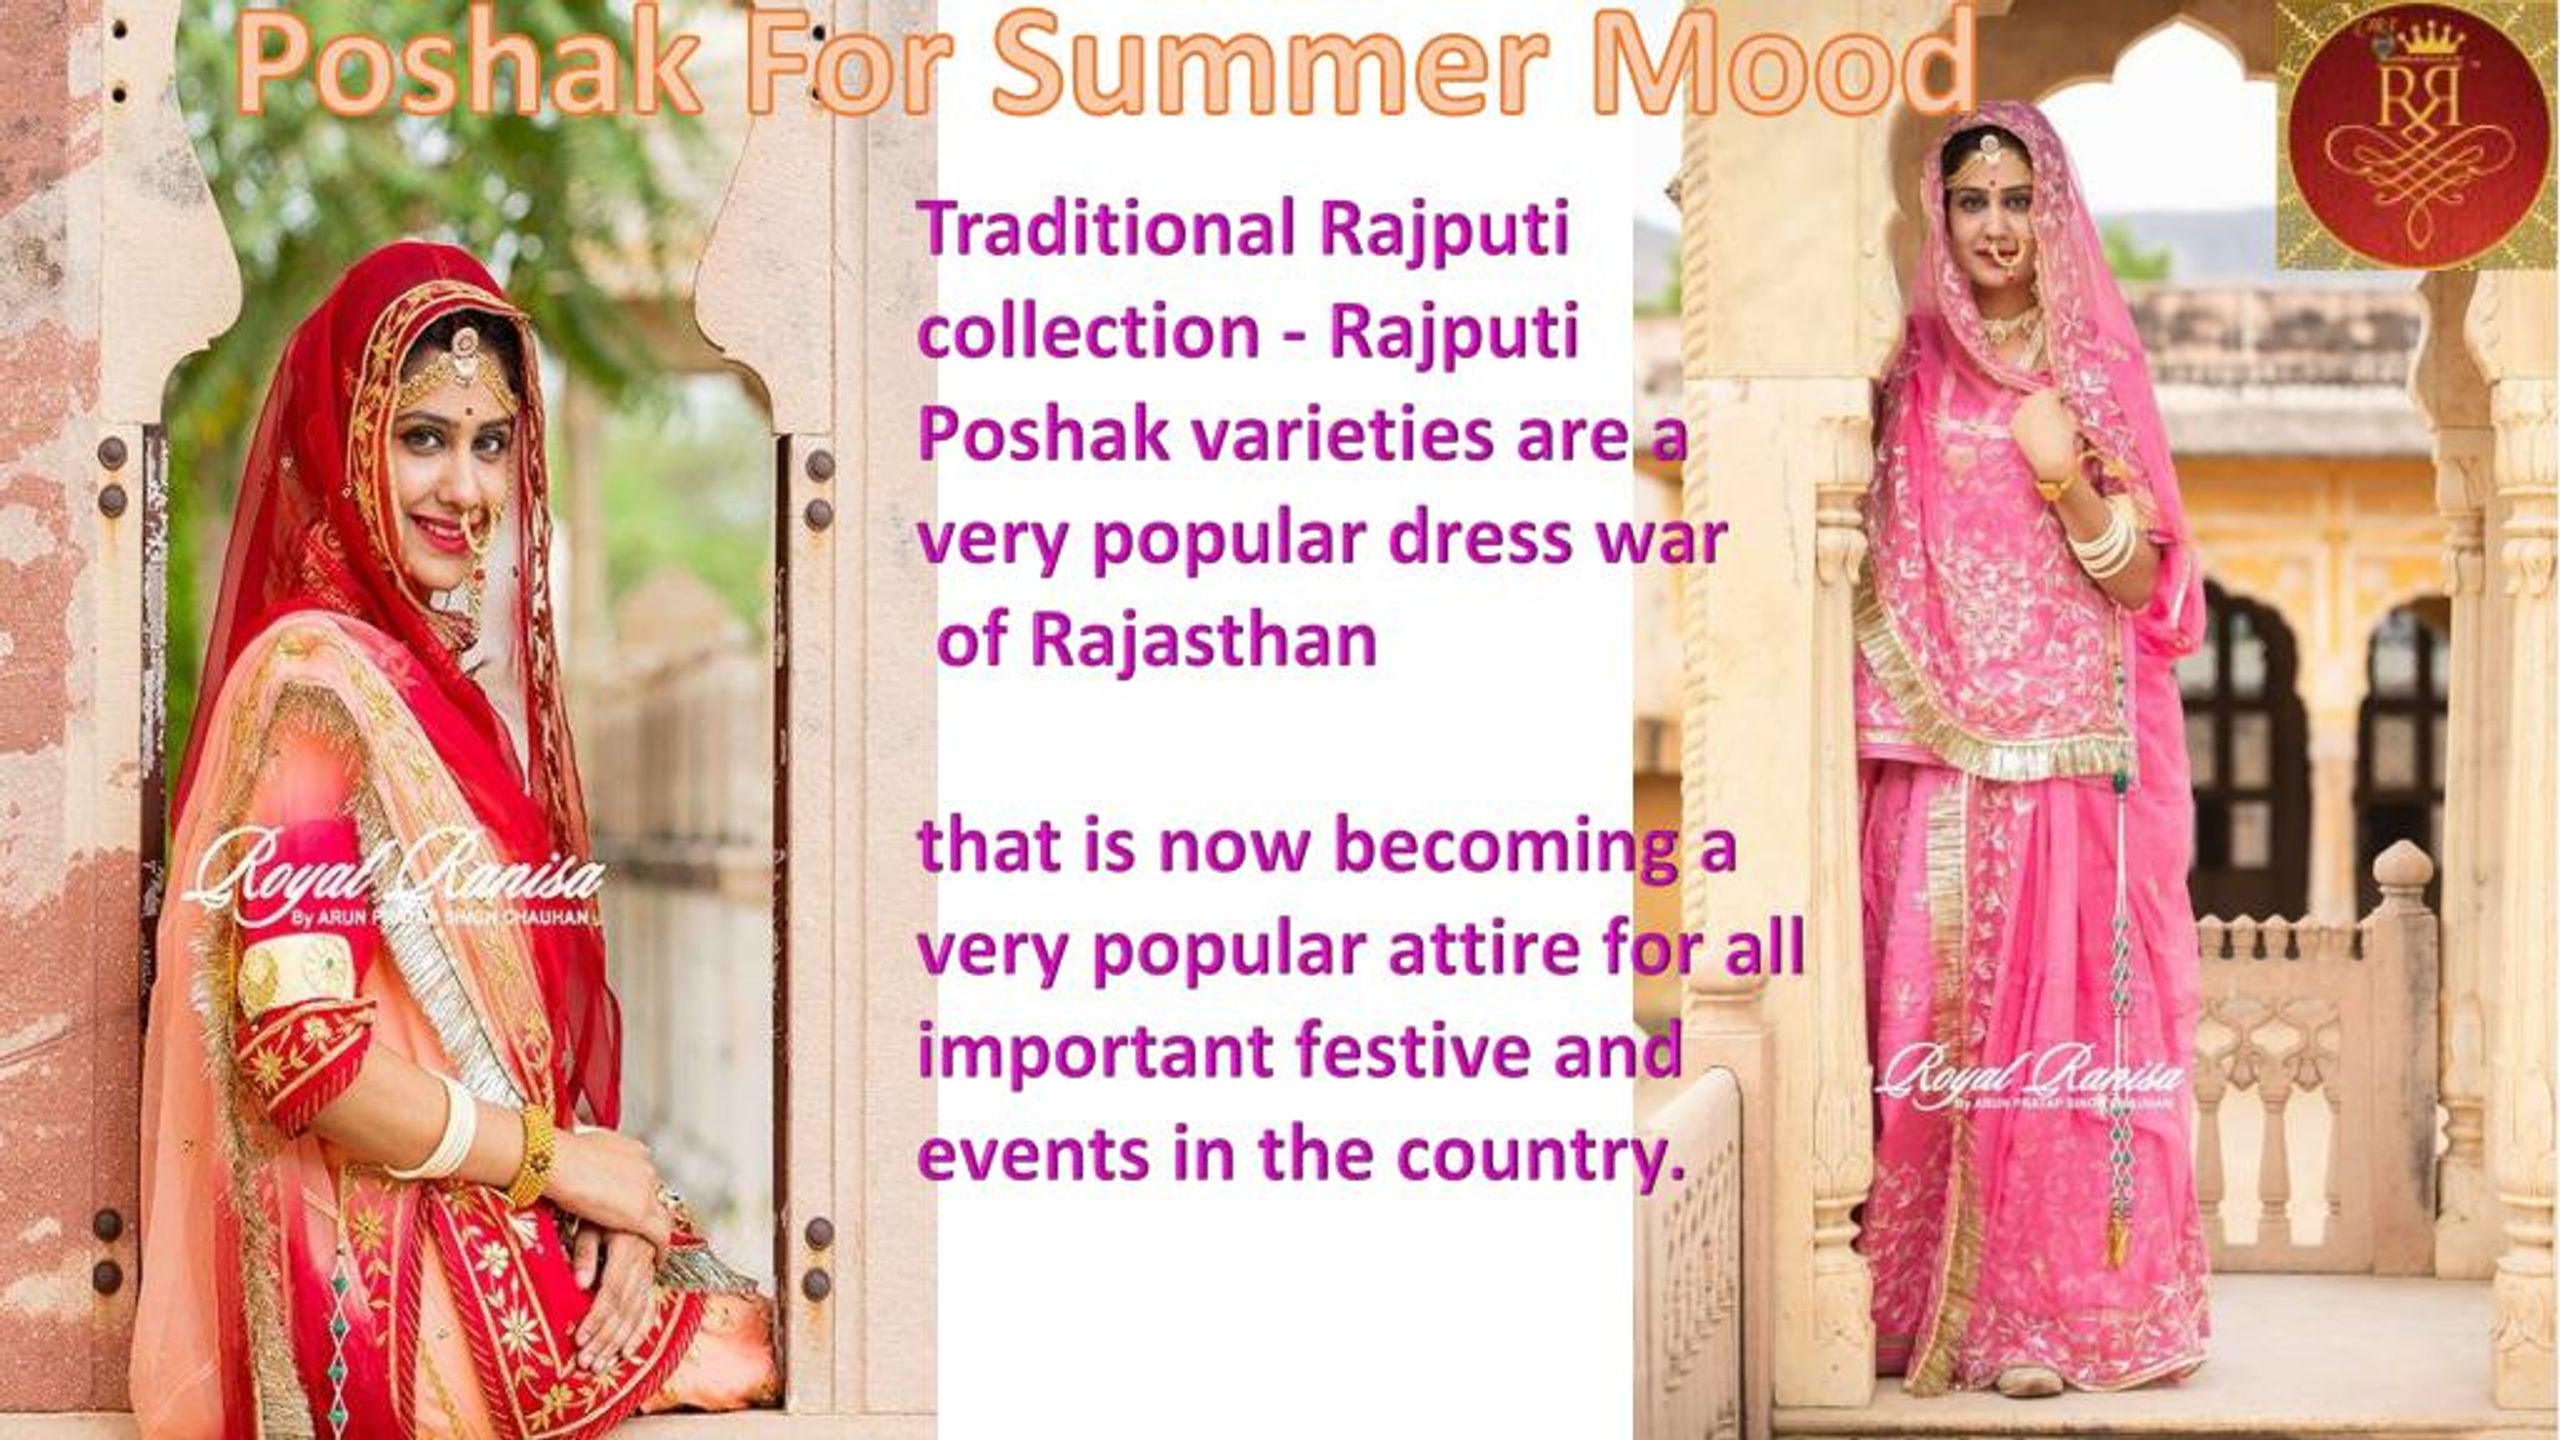 Ancient rajputi royal look | Rajasthani dress, Rajput jewellery, Rajputi  jewellery